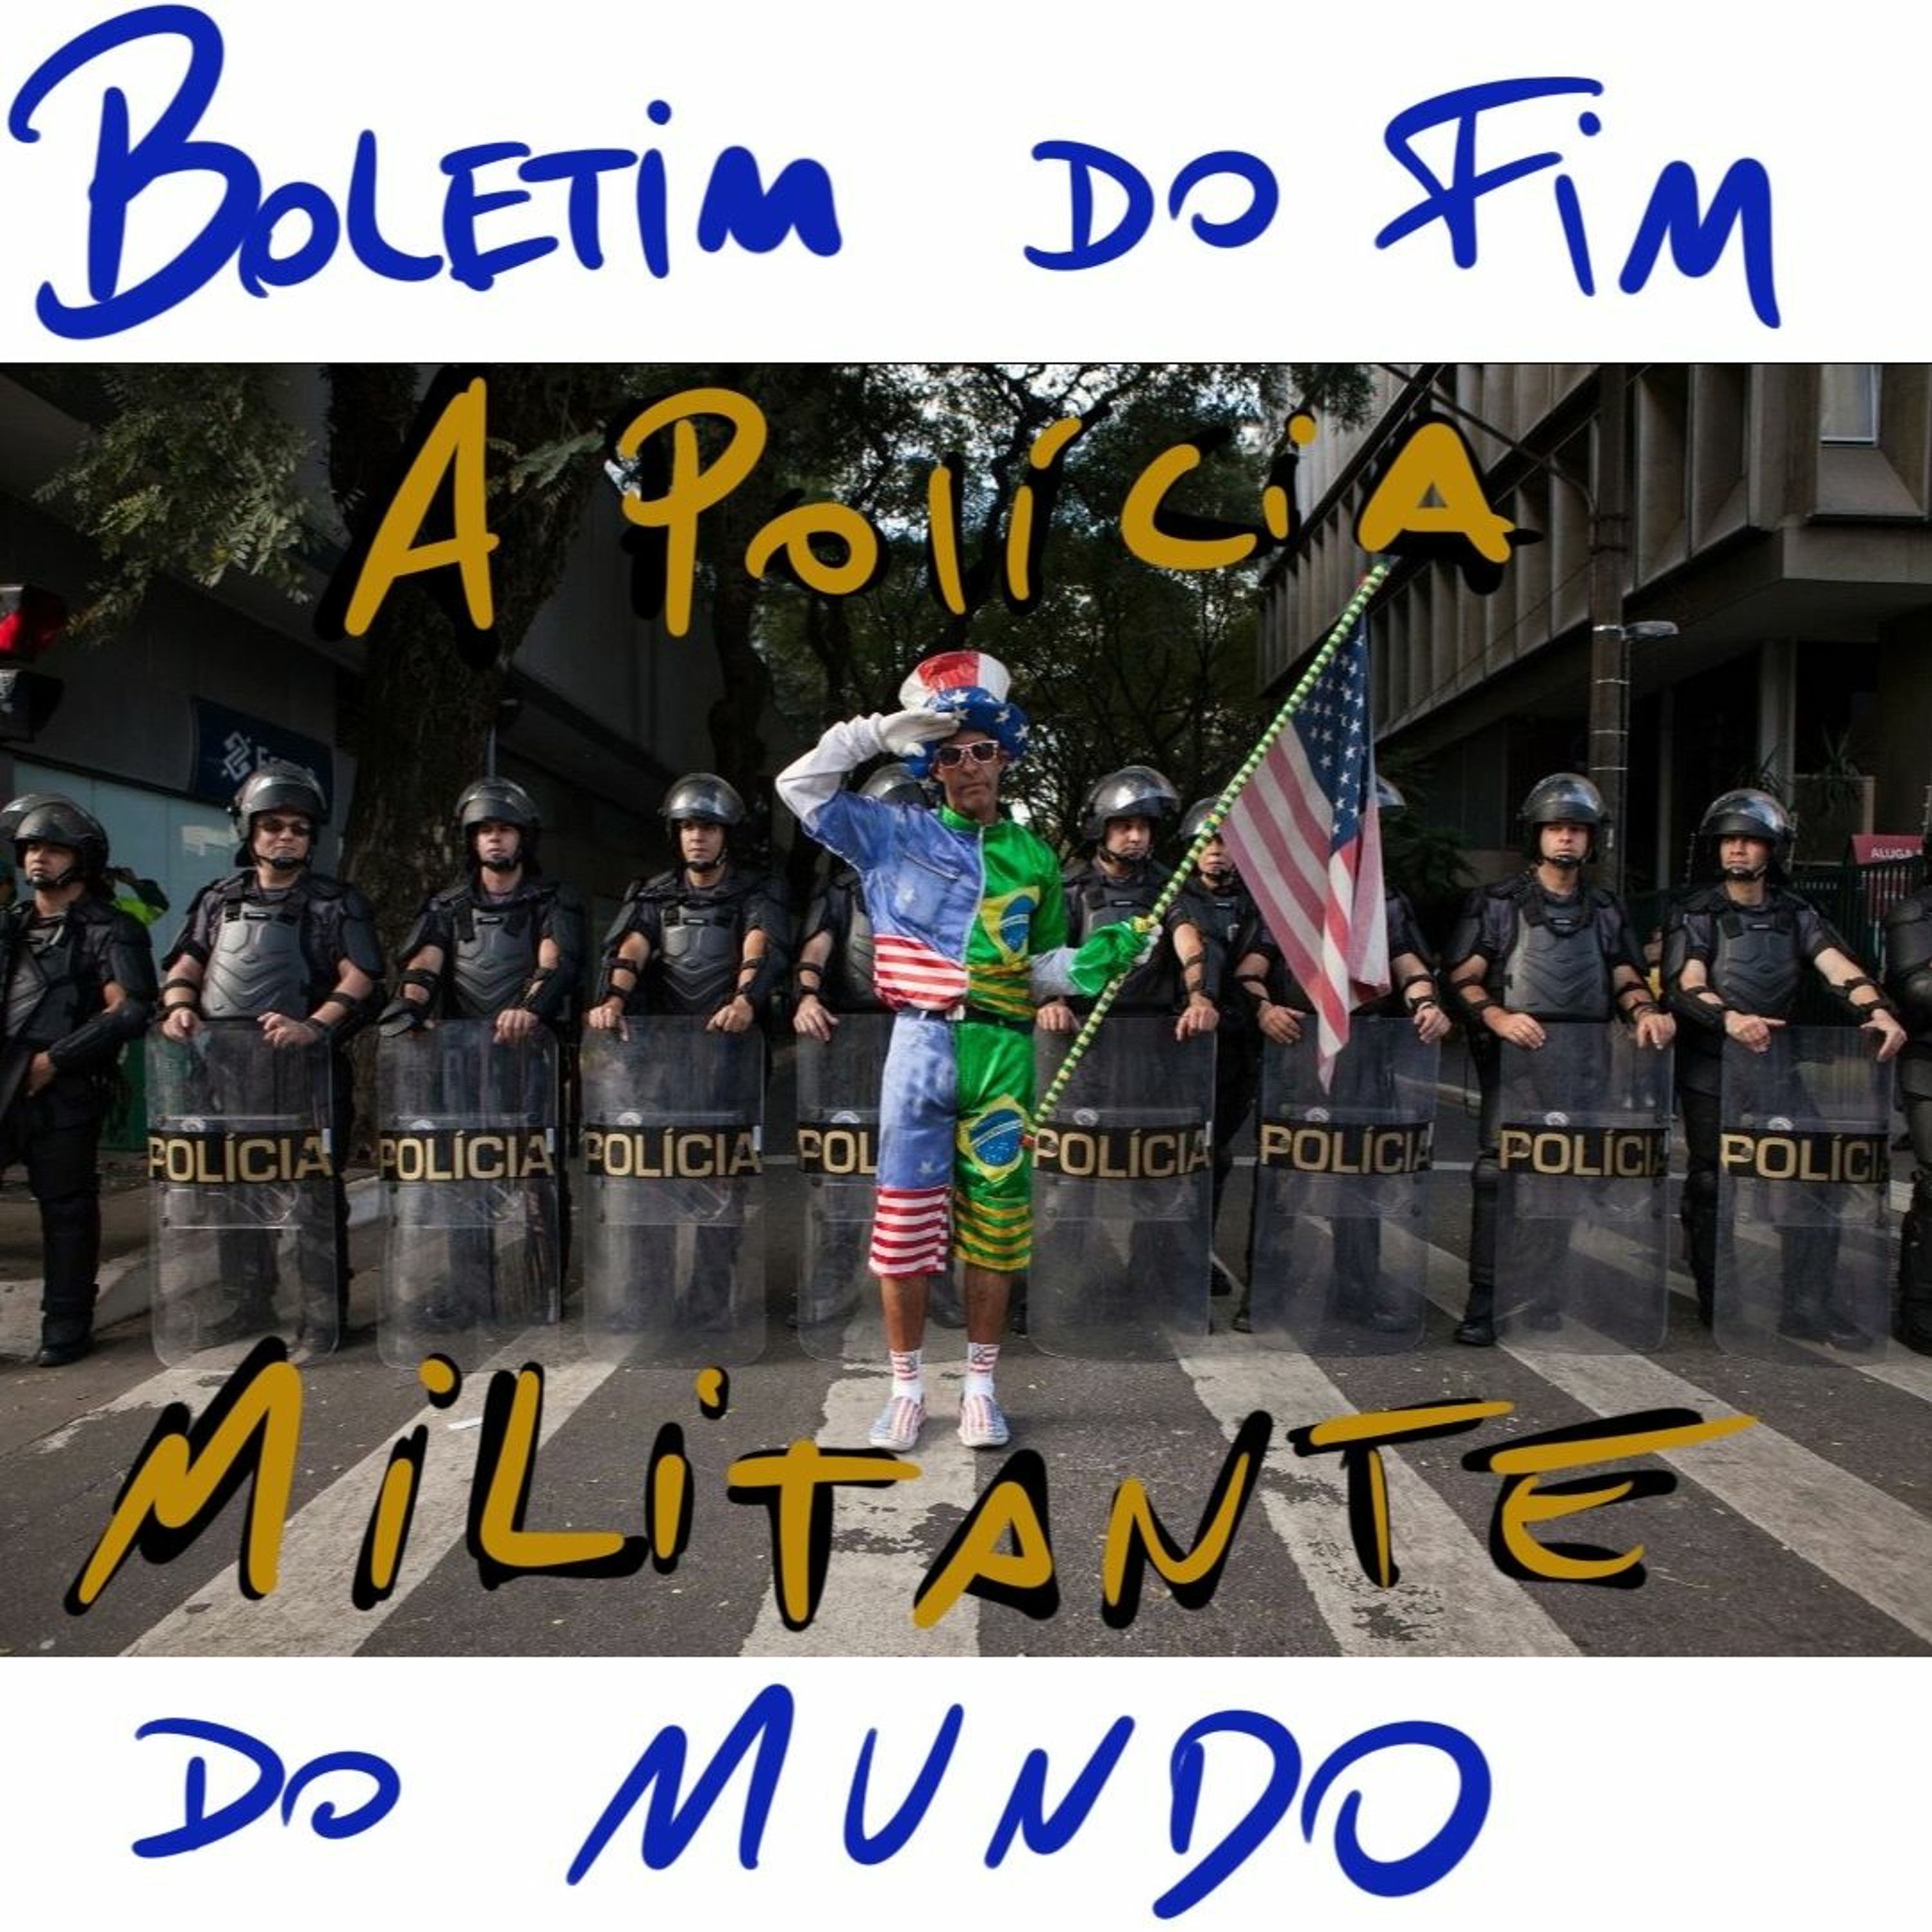 BFM - 11/11 - A Polícia Militante